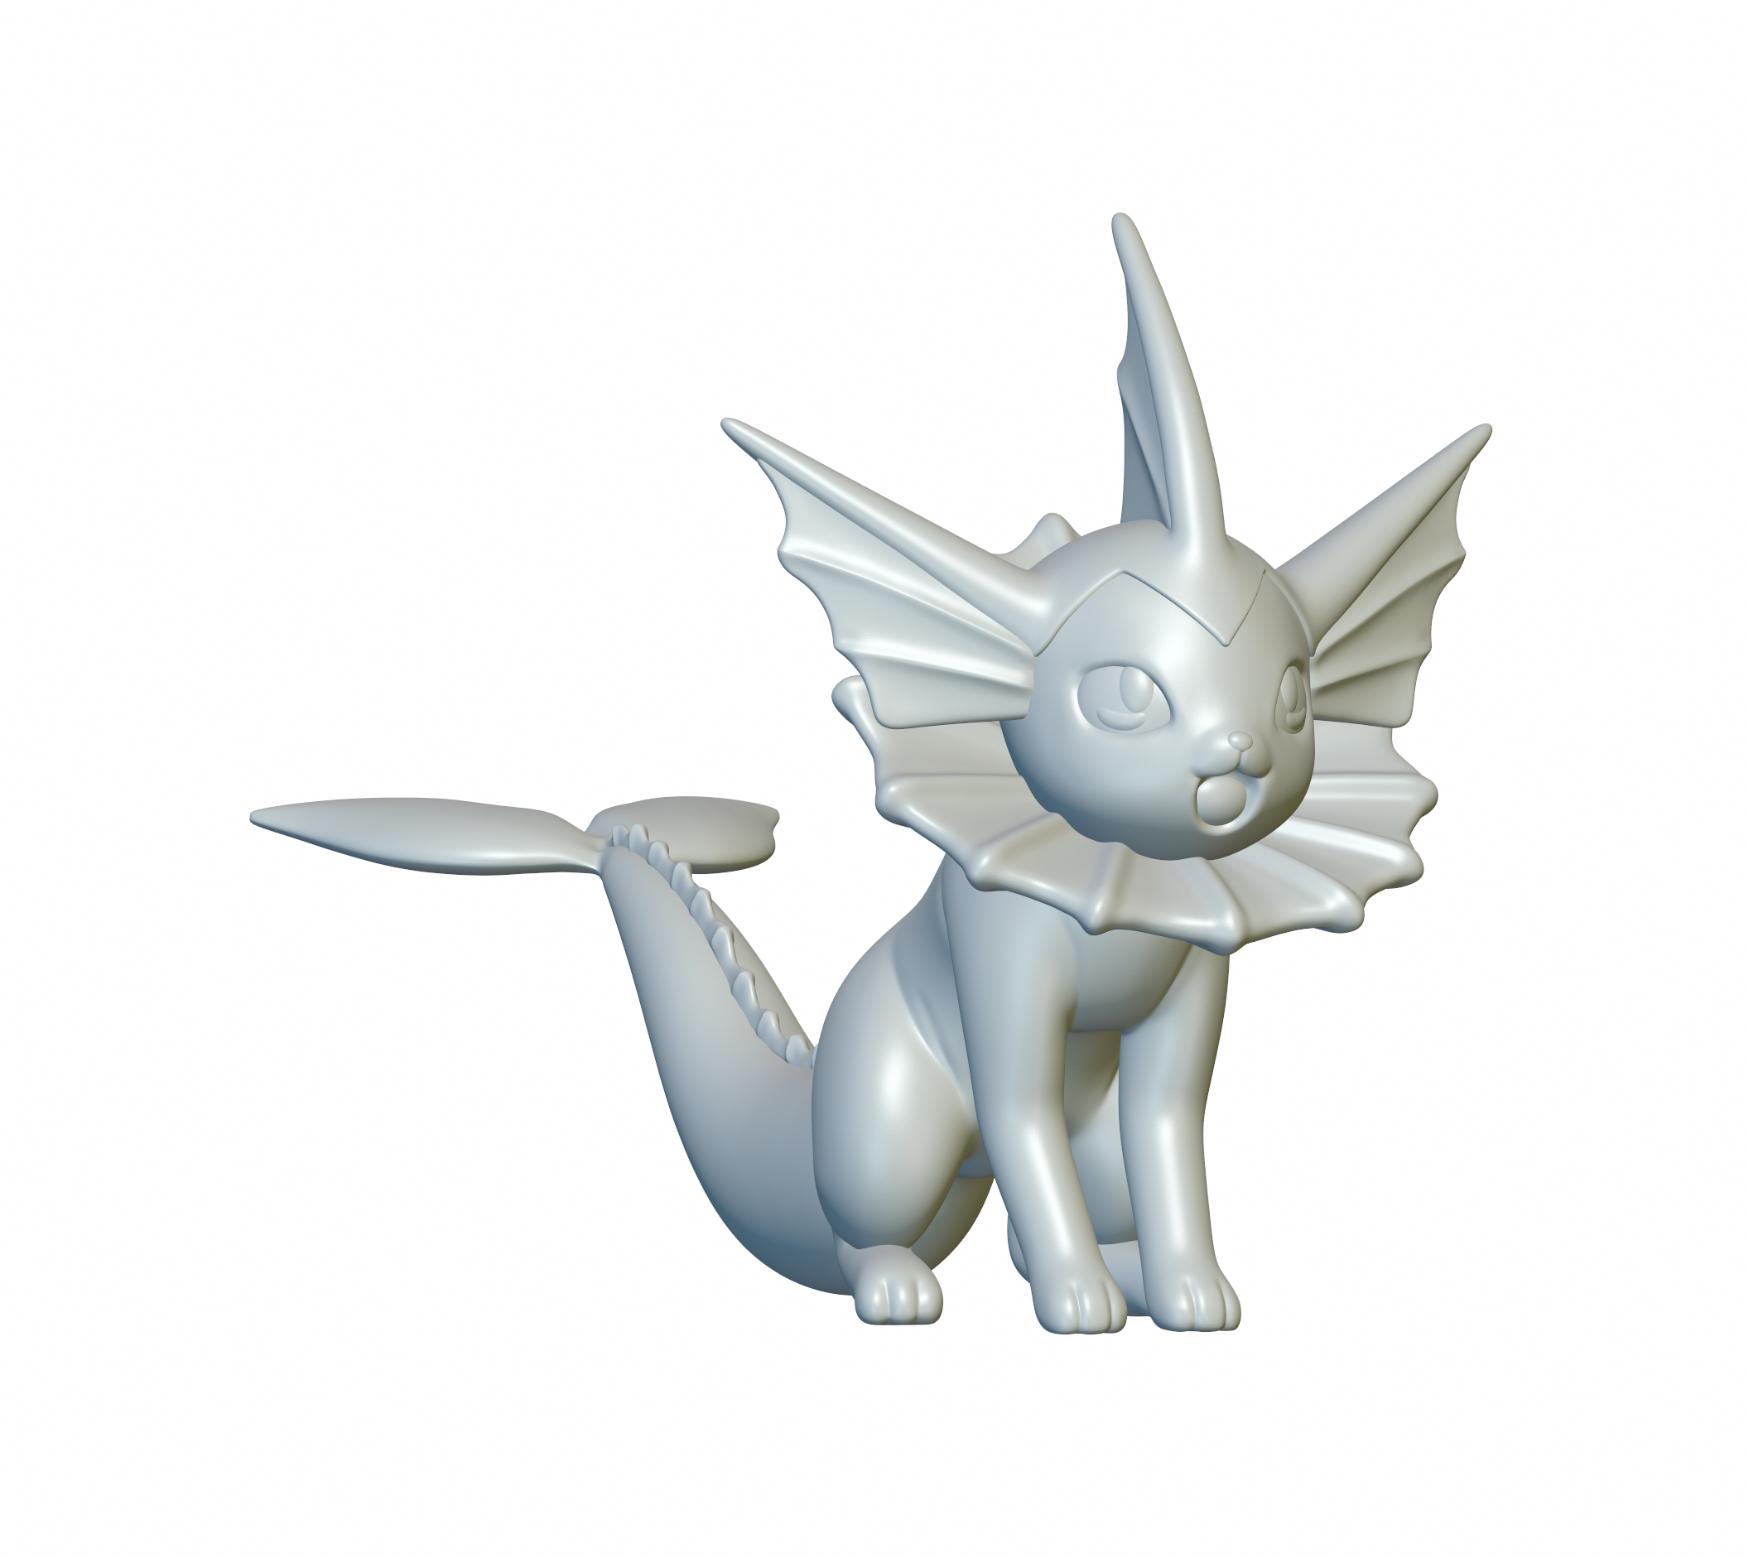 Pokemon Vaporeon #134 - Optimized for 3D Printing 3d model